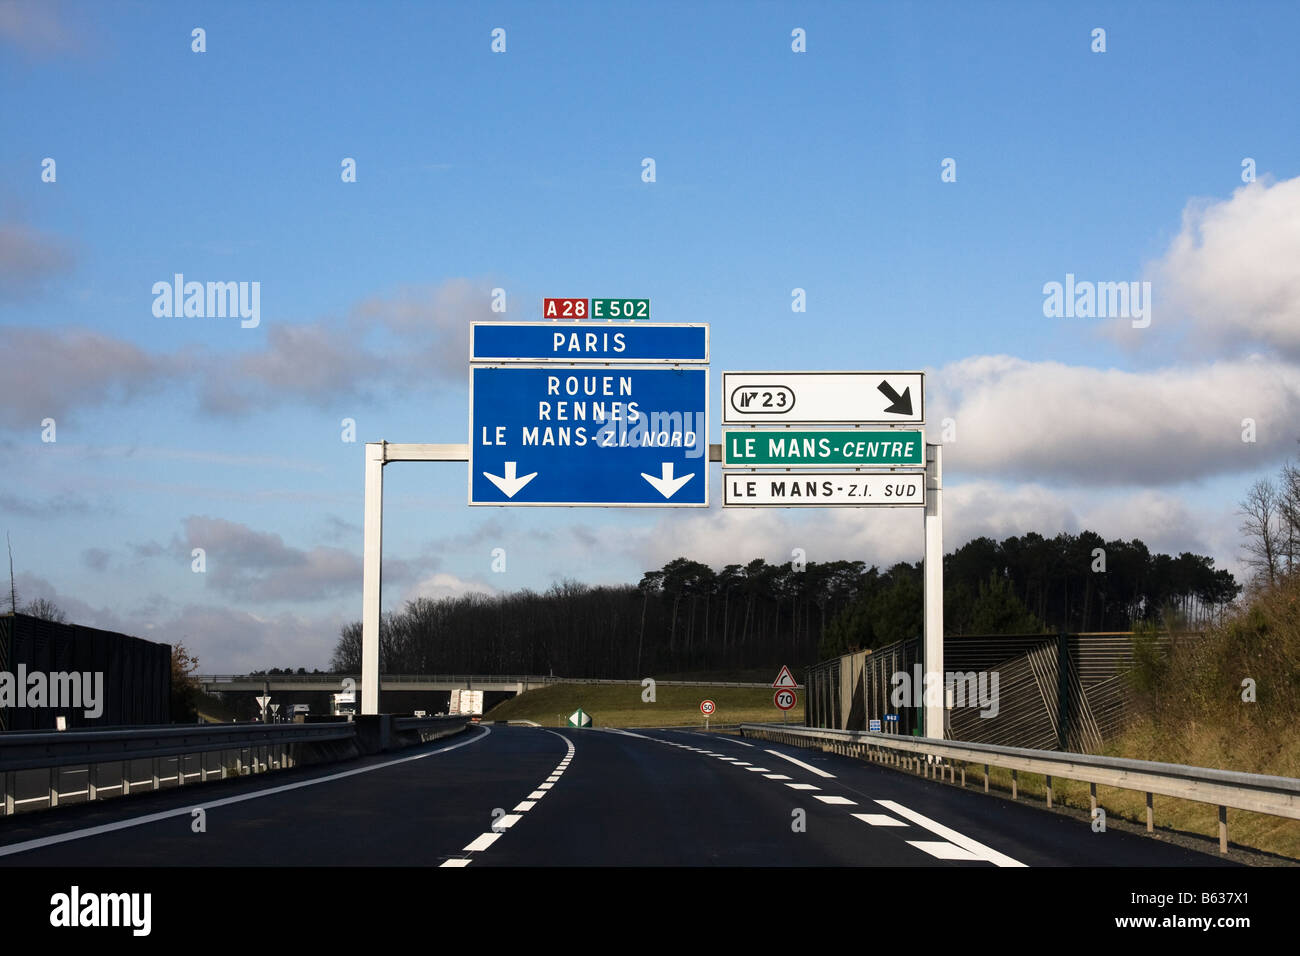 Autoroute Signs to Paris Rouen and Le mans Stock Photo